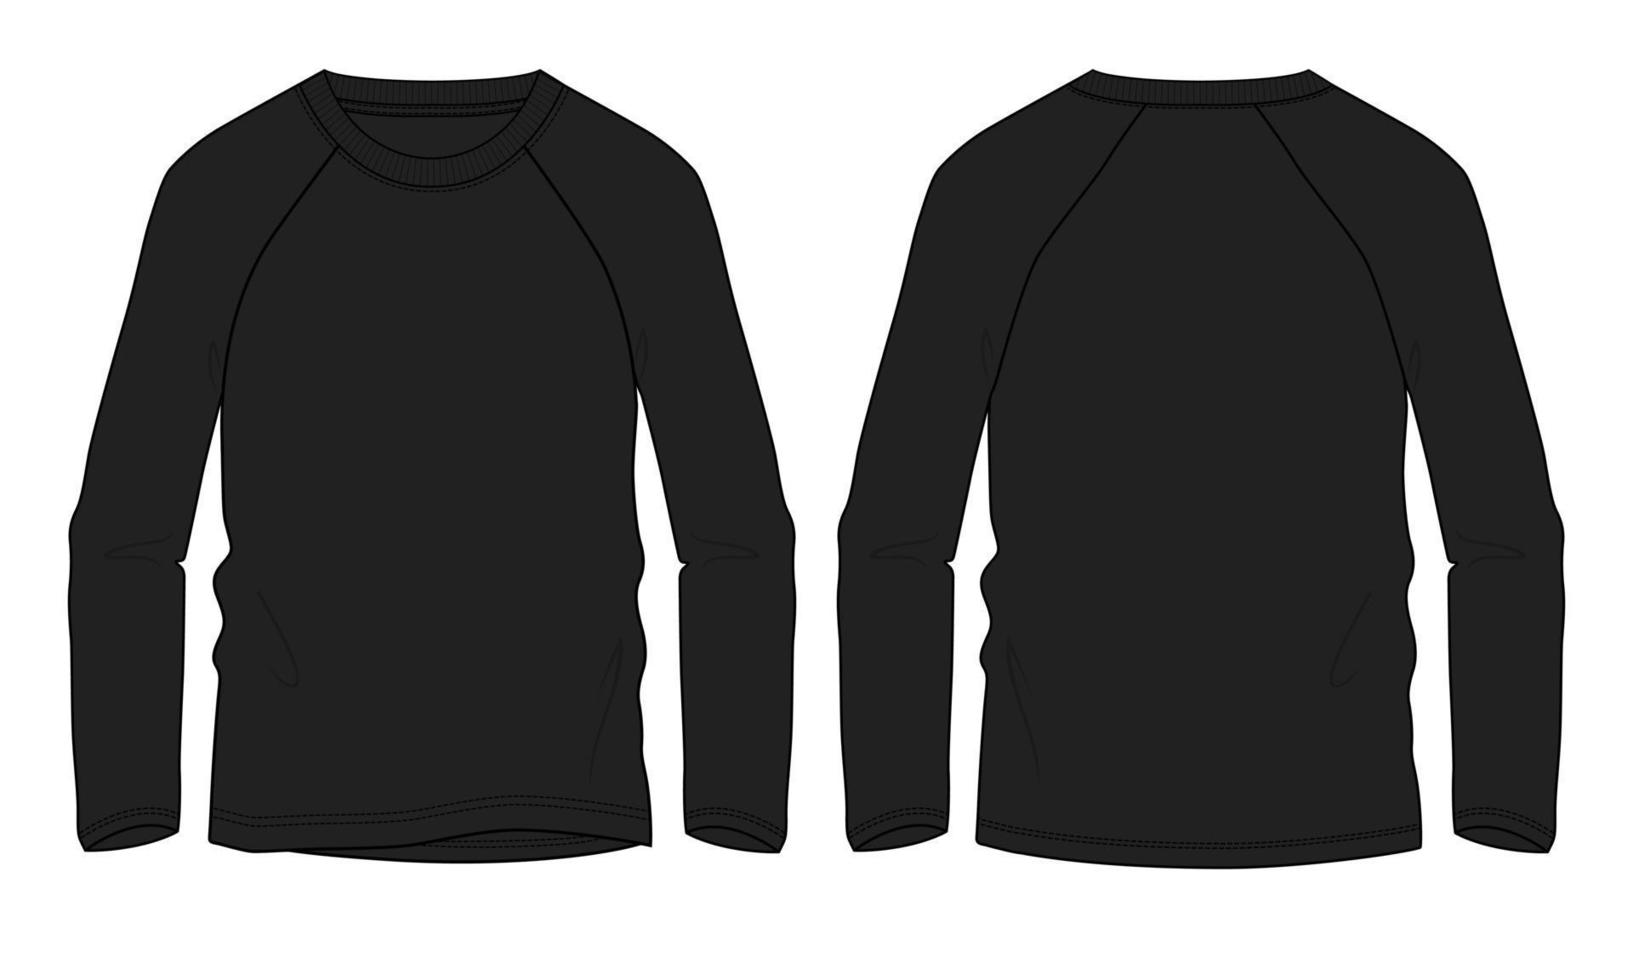 camiseta de manga longa raglan técnica de moda desenho plano ilustração vetorial modelo de cor preta vetor